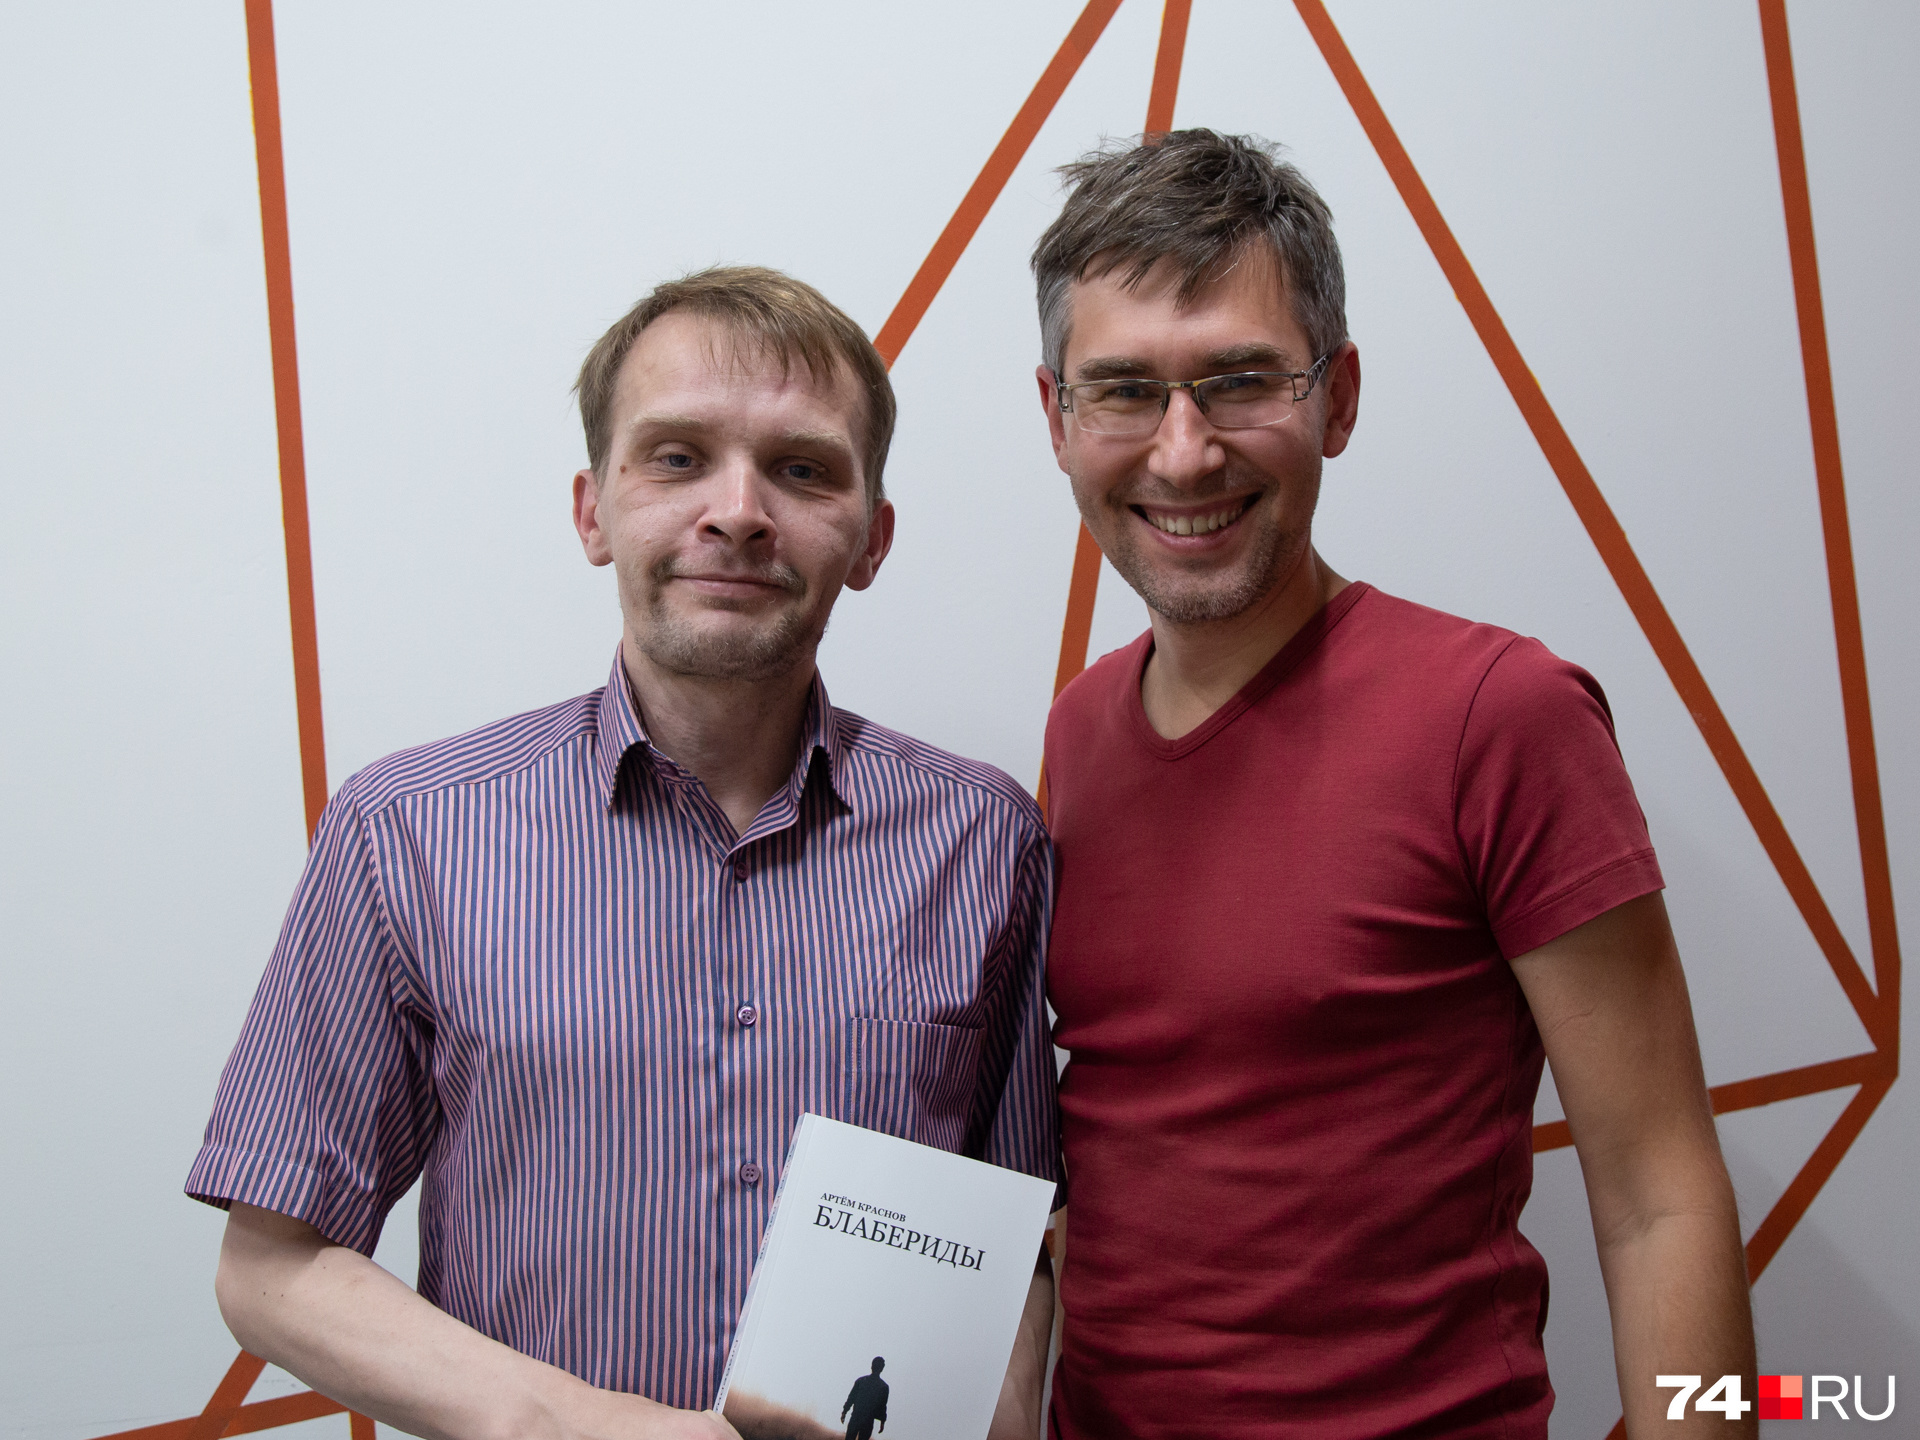 Артём Краснов подарил Алексею Сальникову свою книгу «Блабериды»